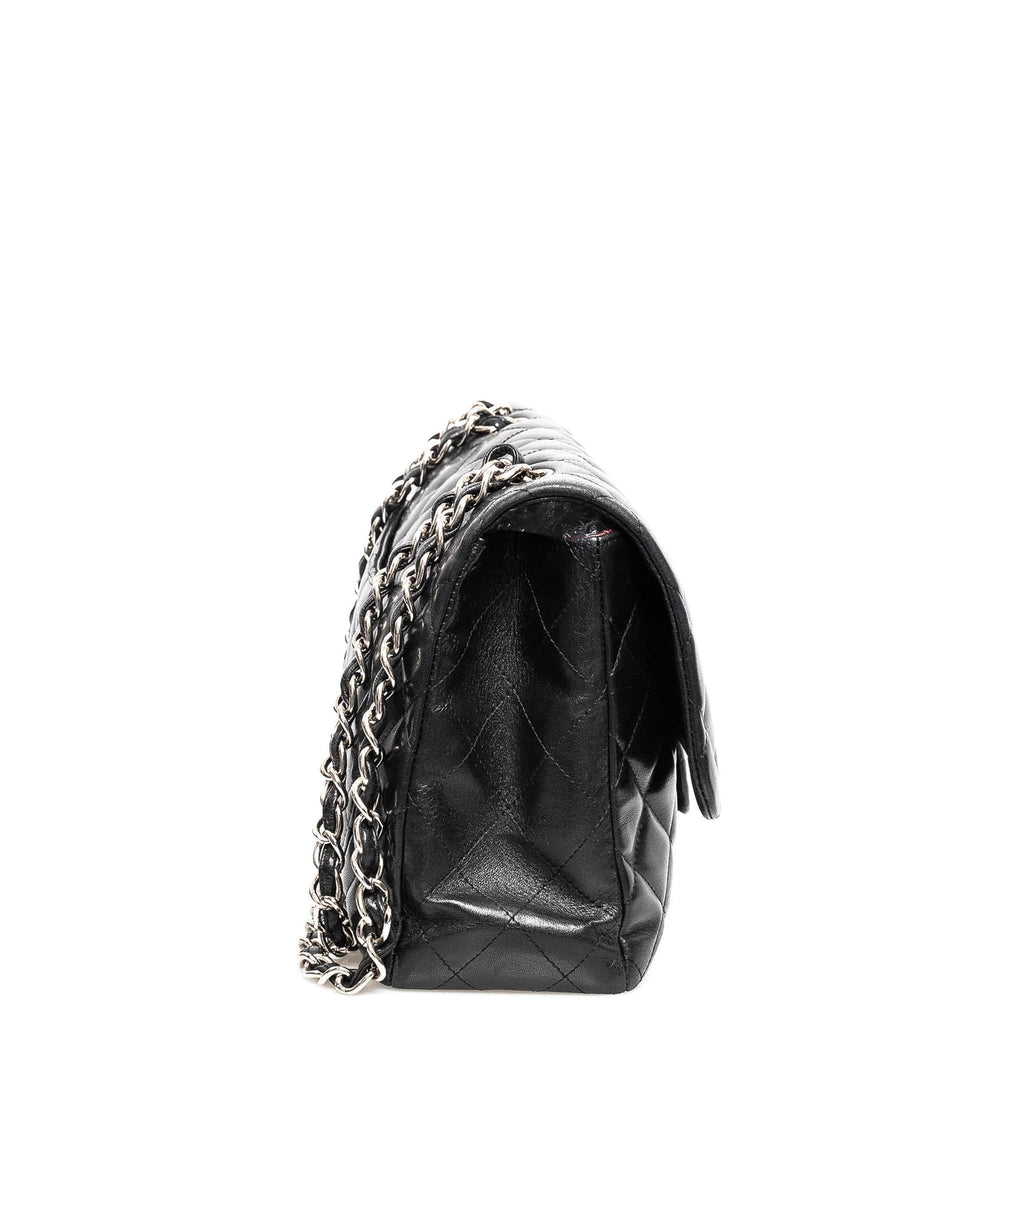 silver chanel purse